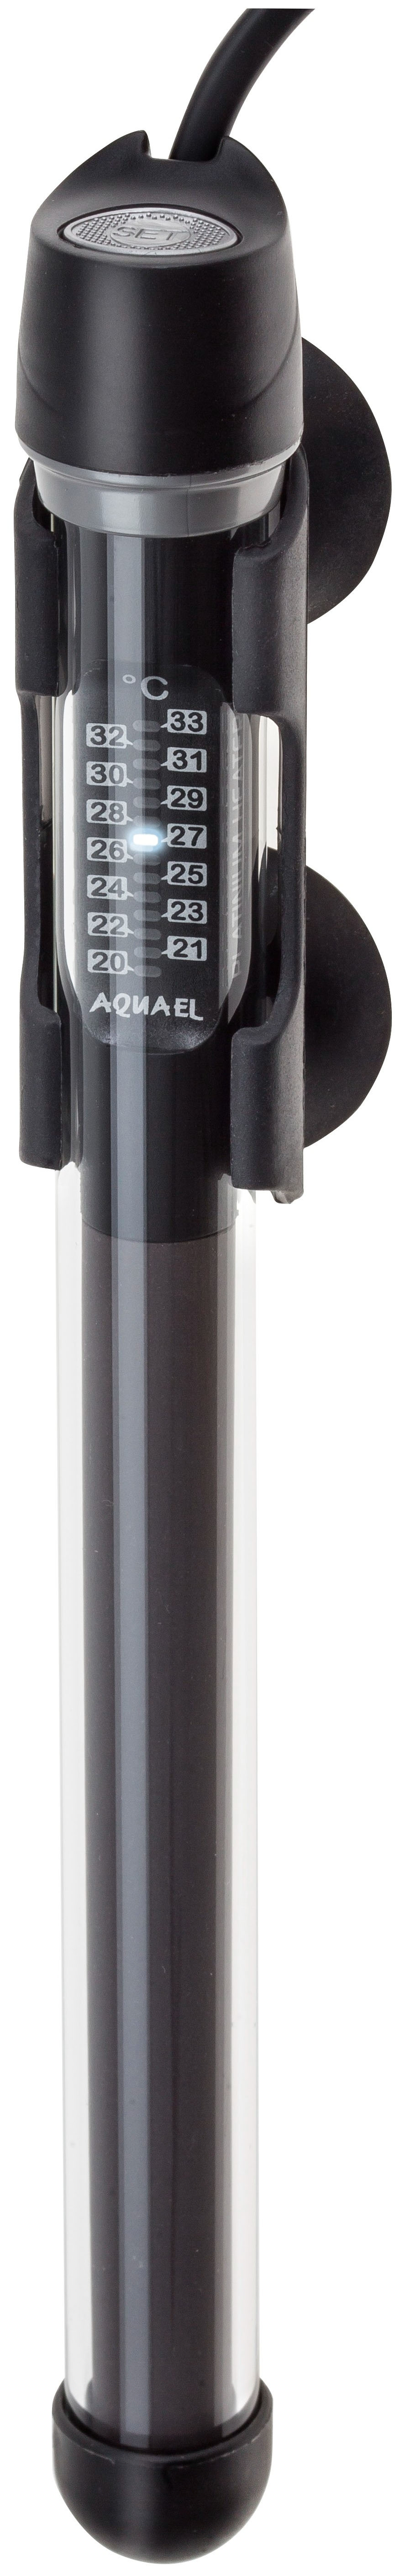 Нагреватель для аквариума Aquael Platinium Heater стеклянный, регулируемый 100 Вт 60-100 л